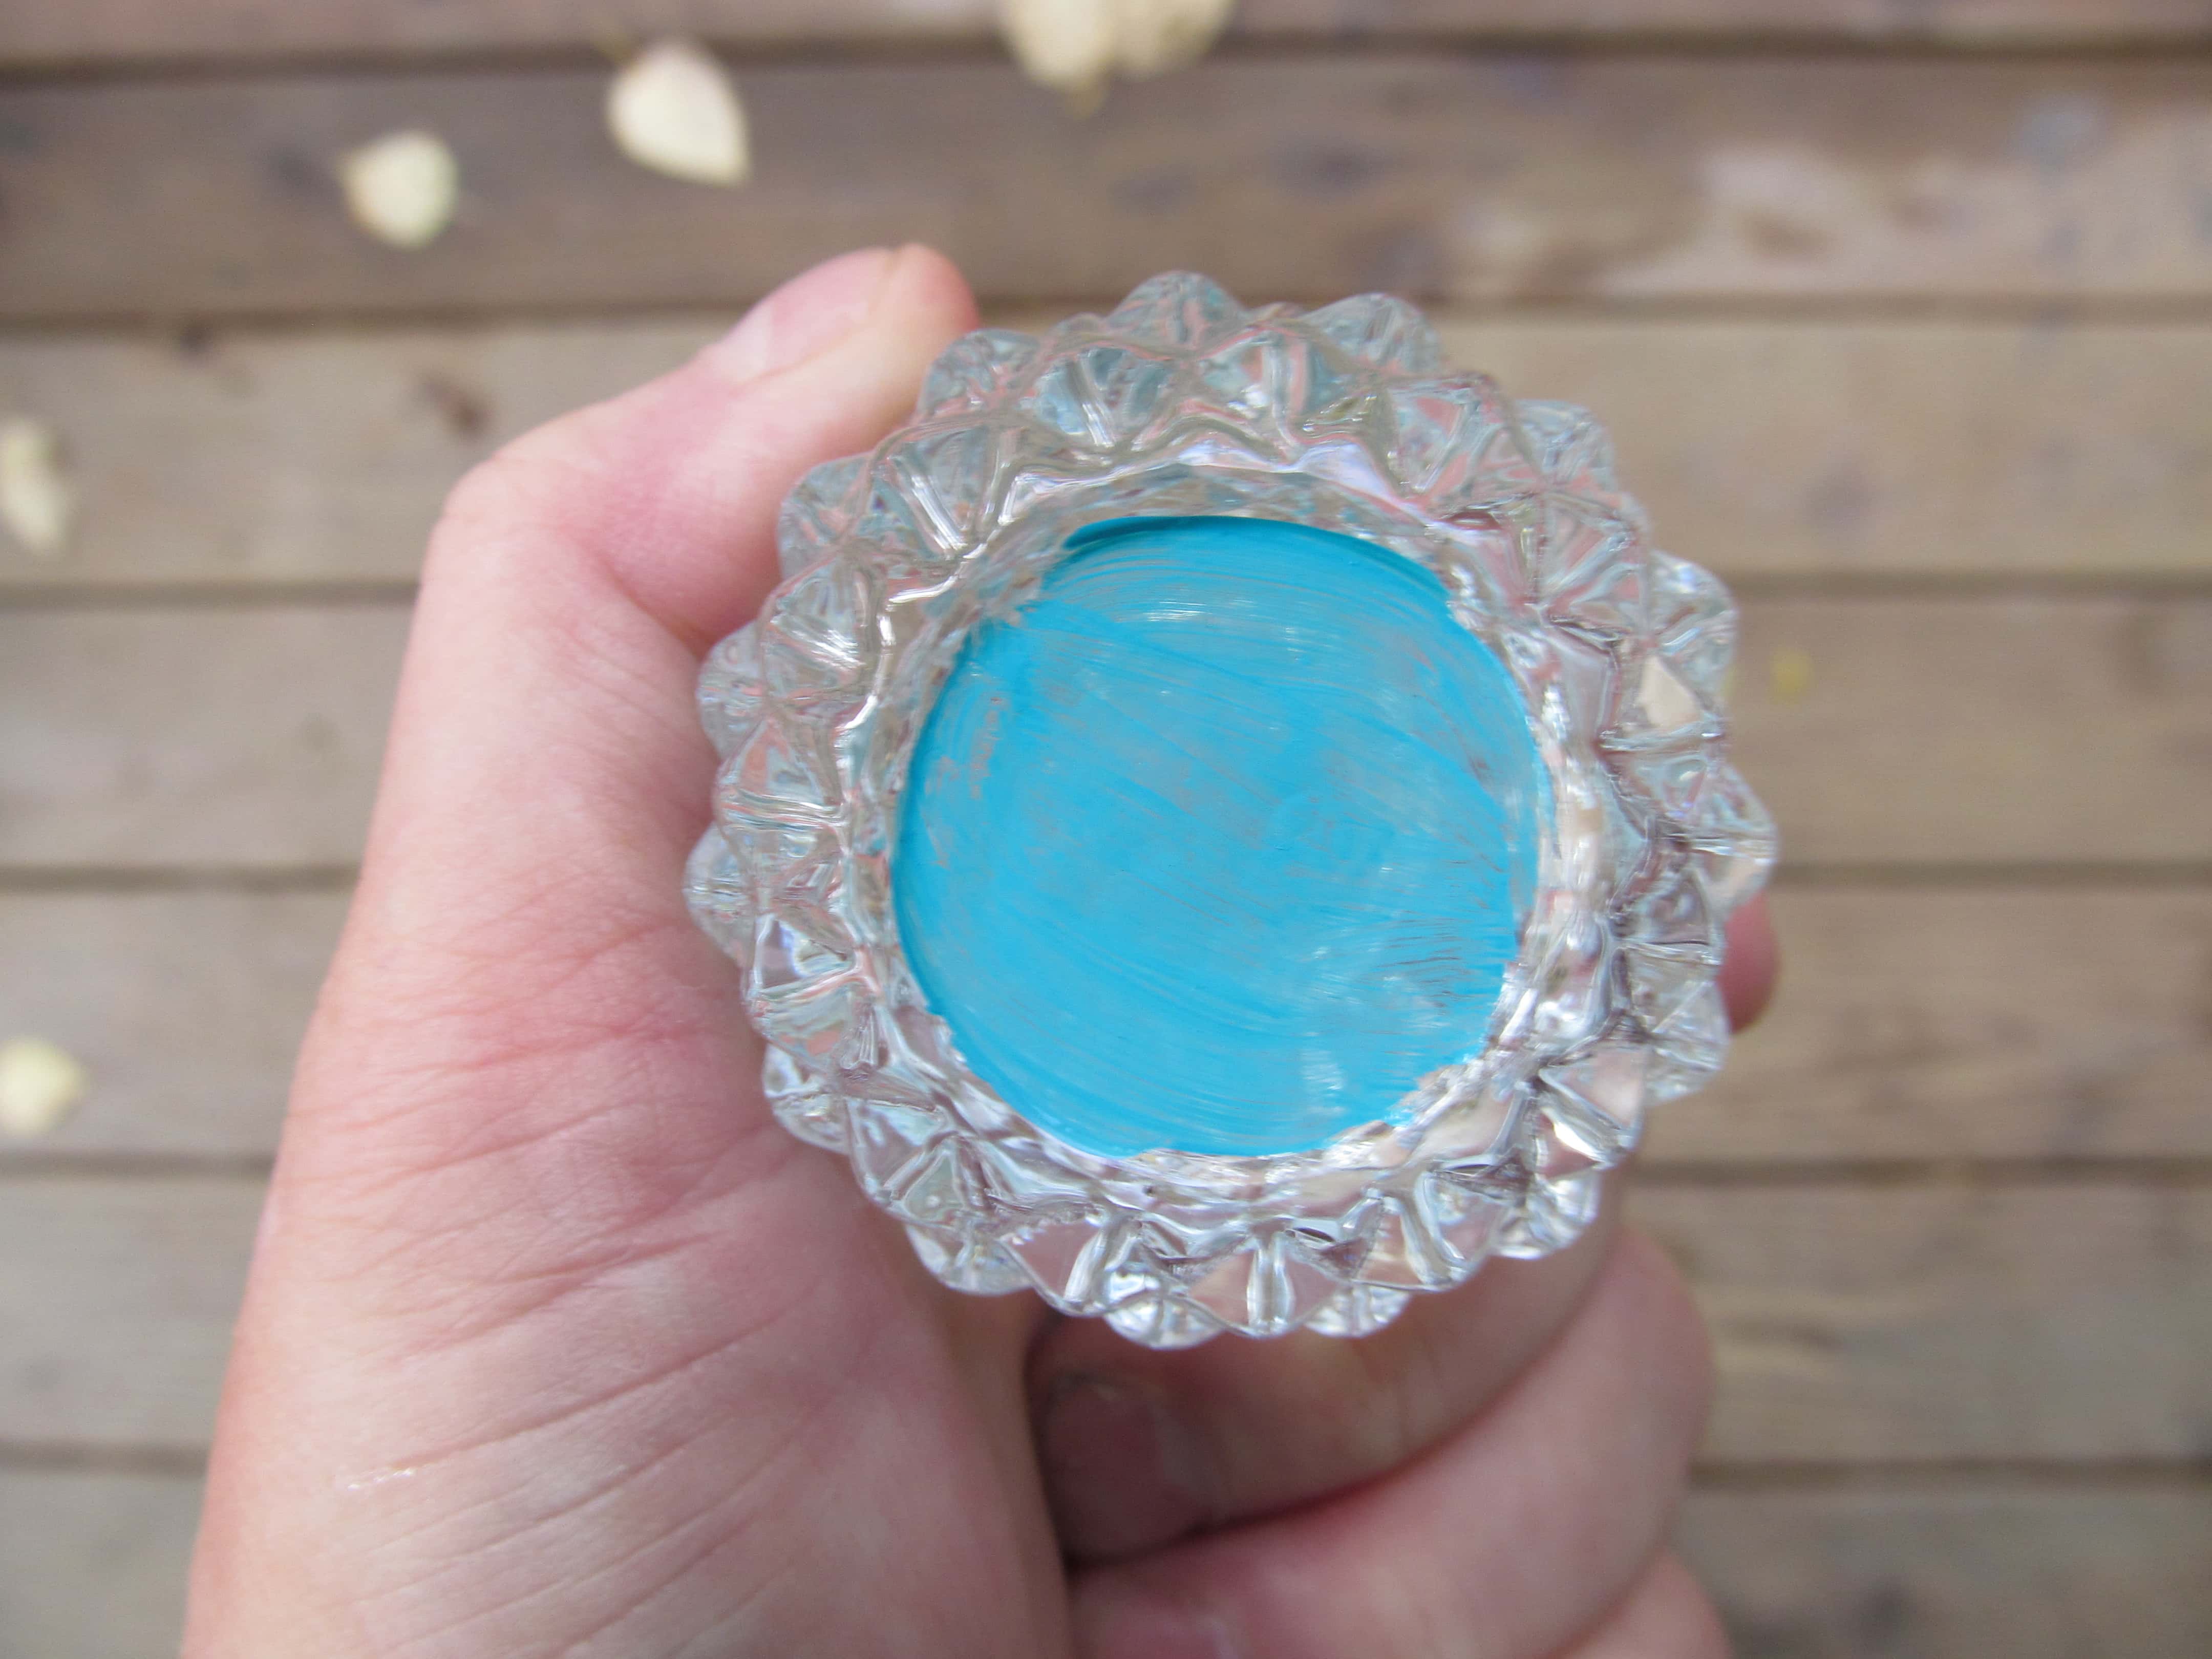 malet bunden af en cut-glas lysestage med blå maling. Det afspejler farven over hele glasset, så det klare glas ser naturligt blåt ud.